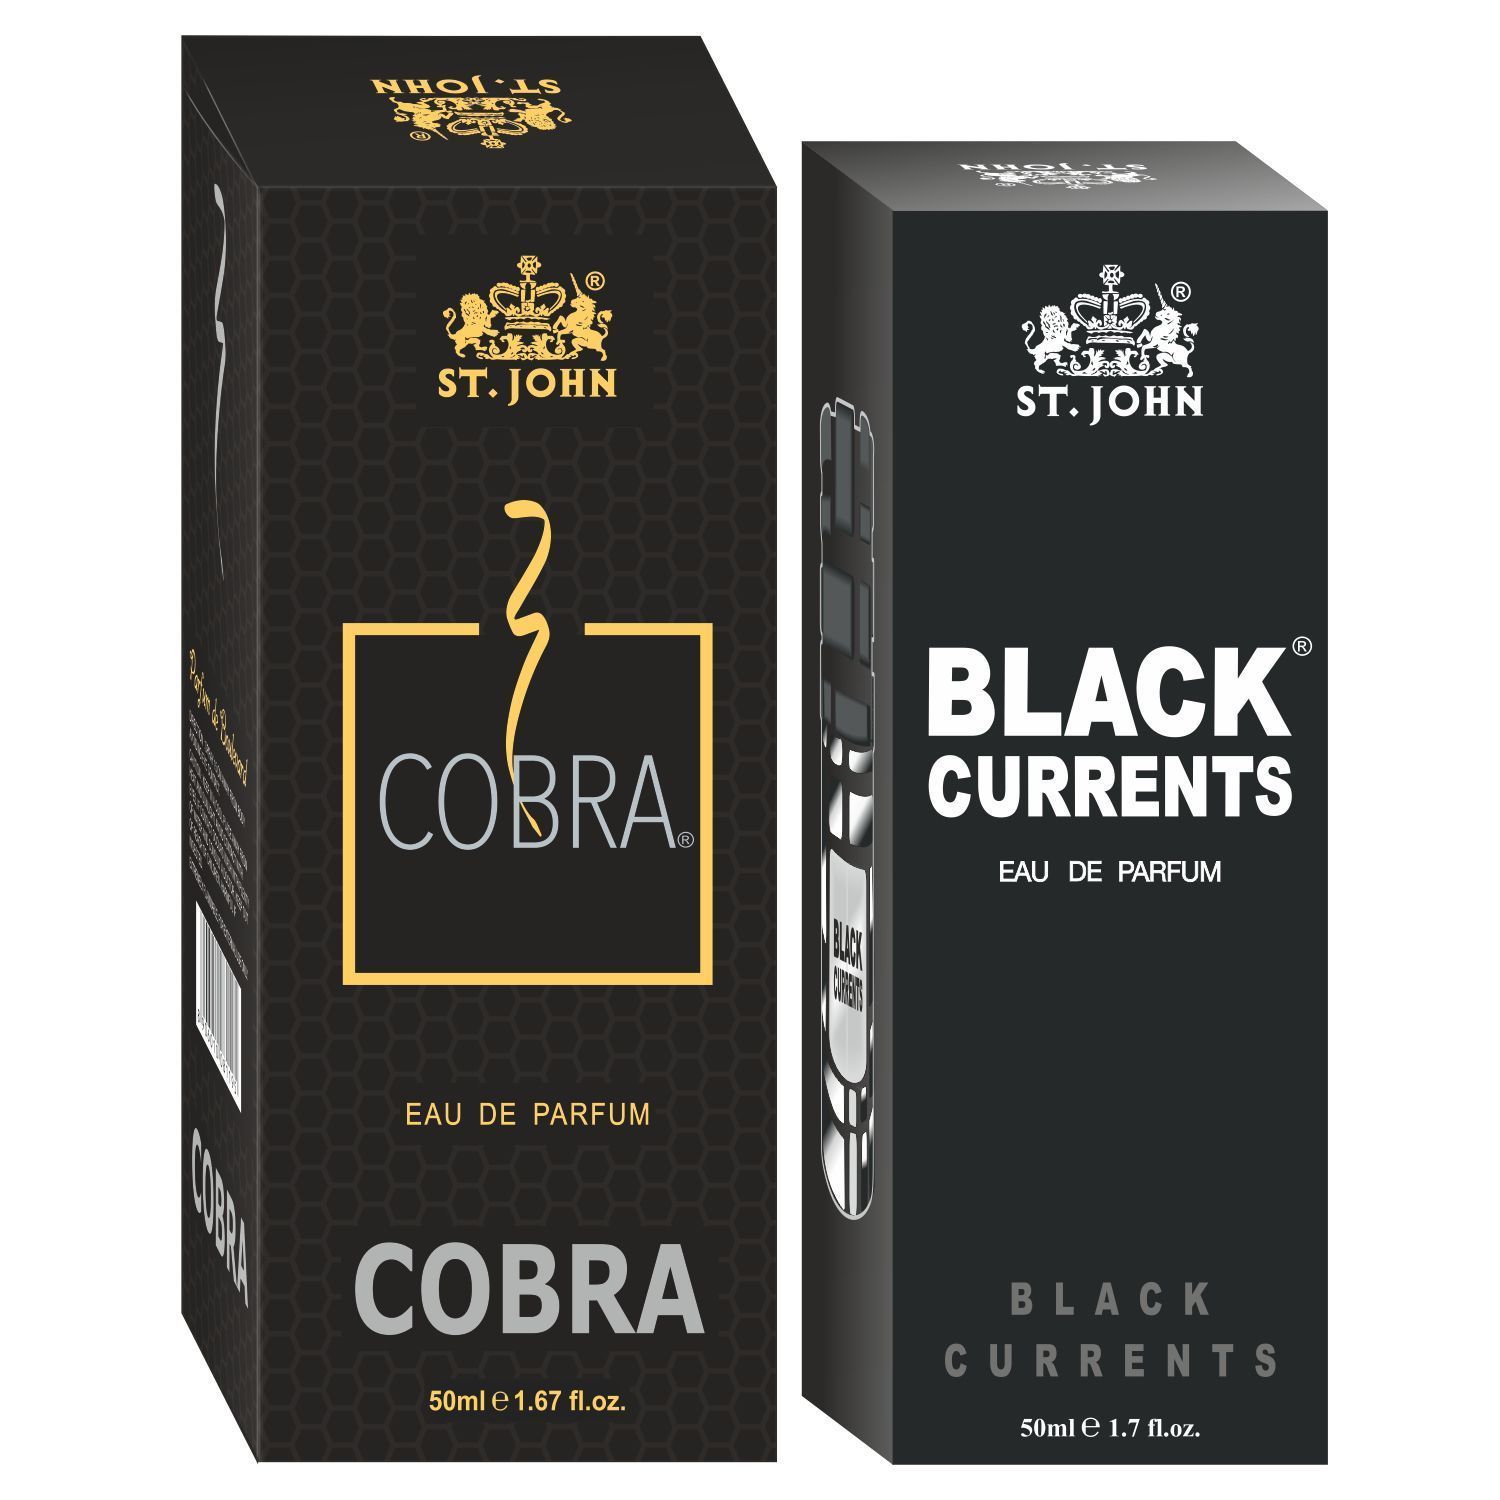 ST-JOHN Cobra 50ml & Black Current 50ml Body Perfume Combo Gift Pack Eau de Parfum  -  100 ml (For Men & Women)